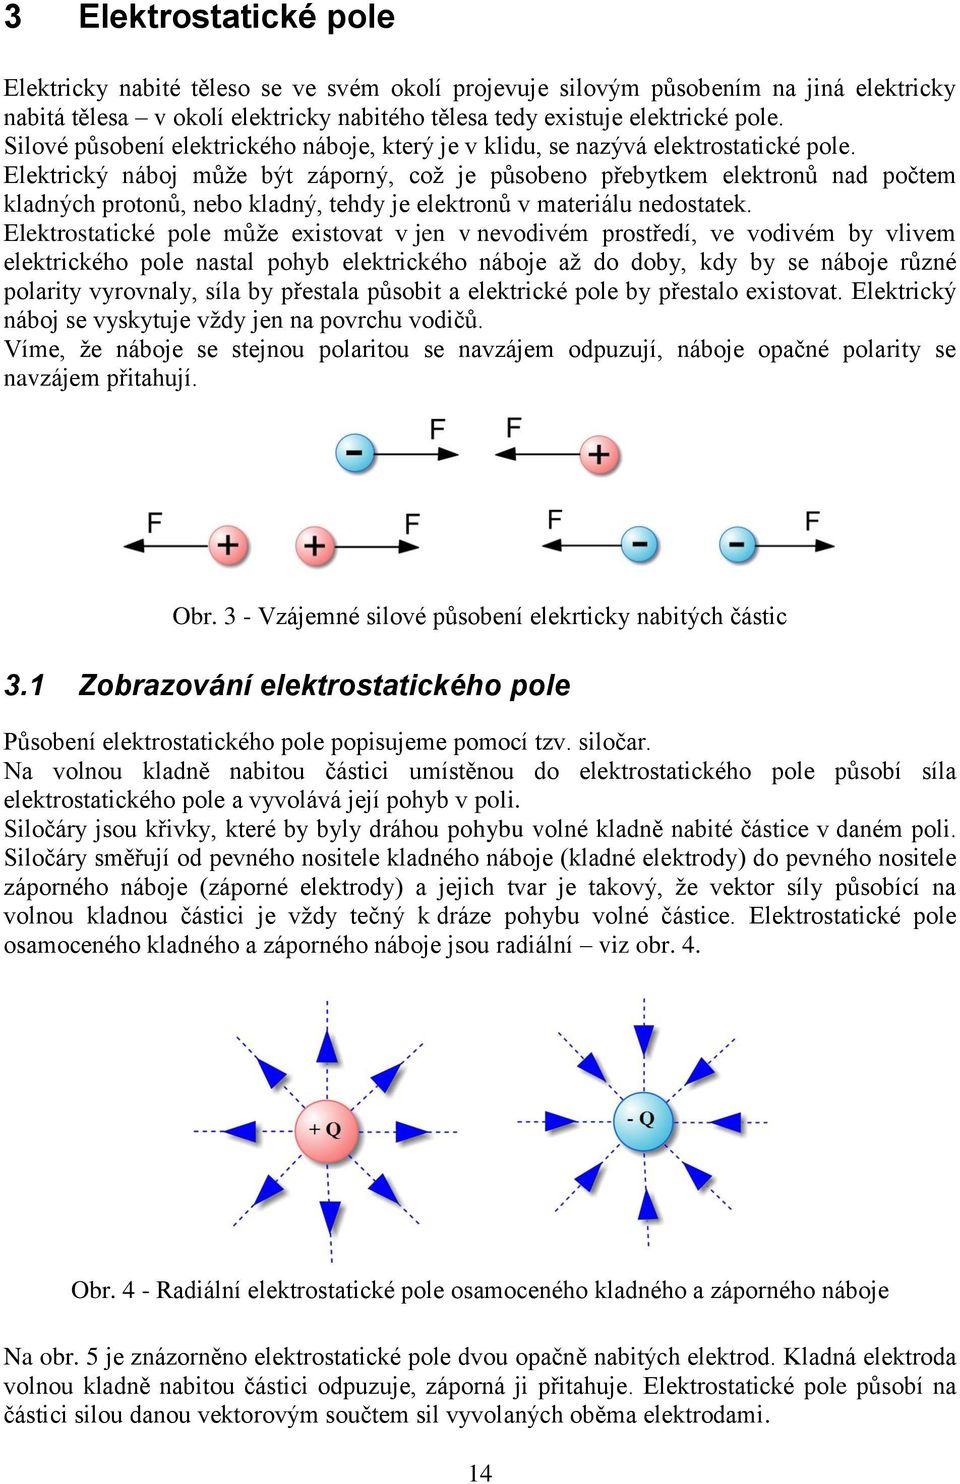 Elektrický náboj může být záporný, což je působeno přebytkem elektronů nad počtem kladných protonů, nebo kladný, tehdy je elektronů v materiálu nedostatek.